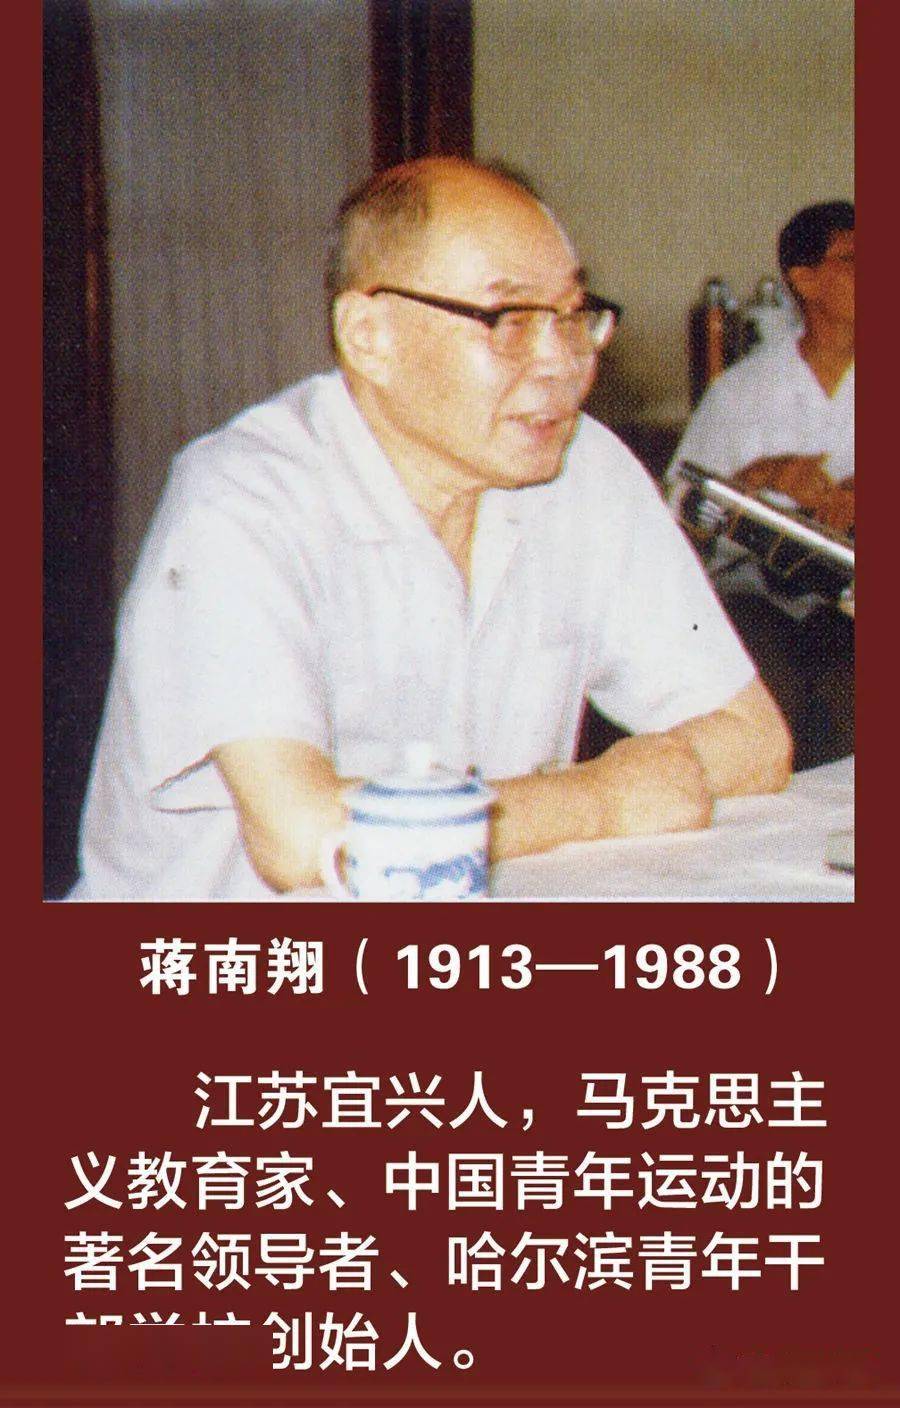 我的父亲蒋南翔图片